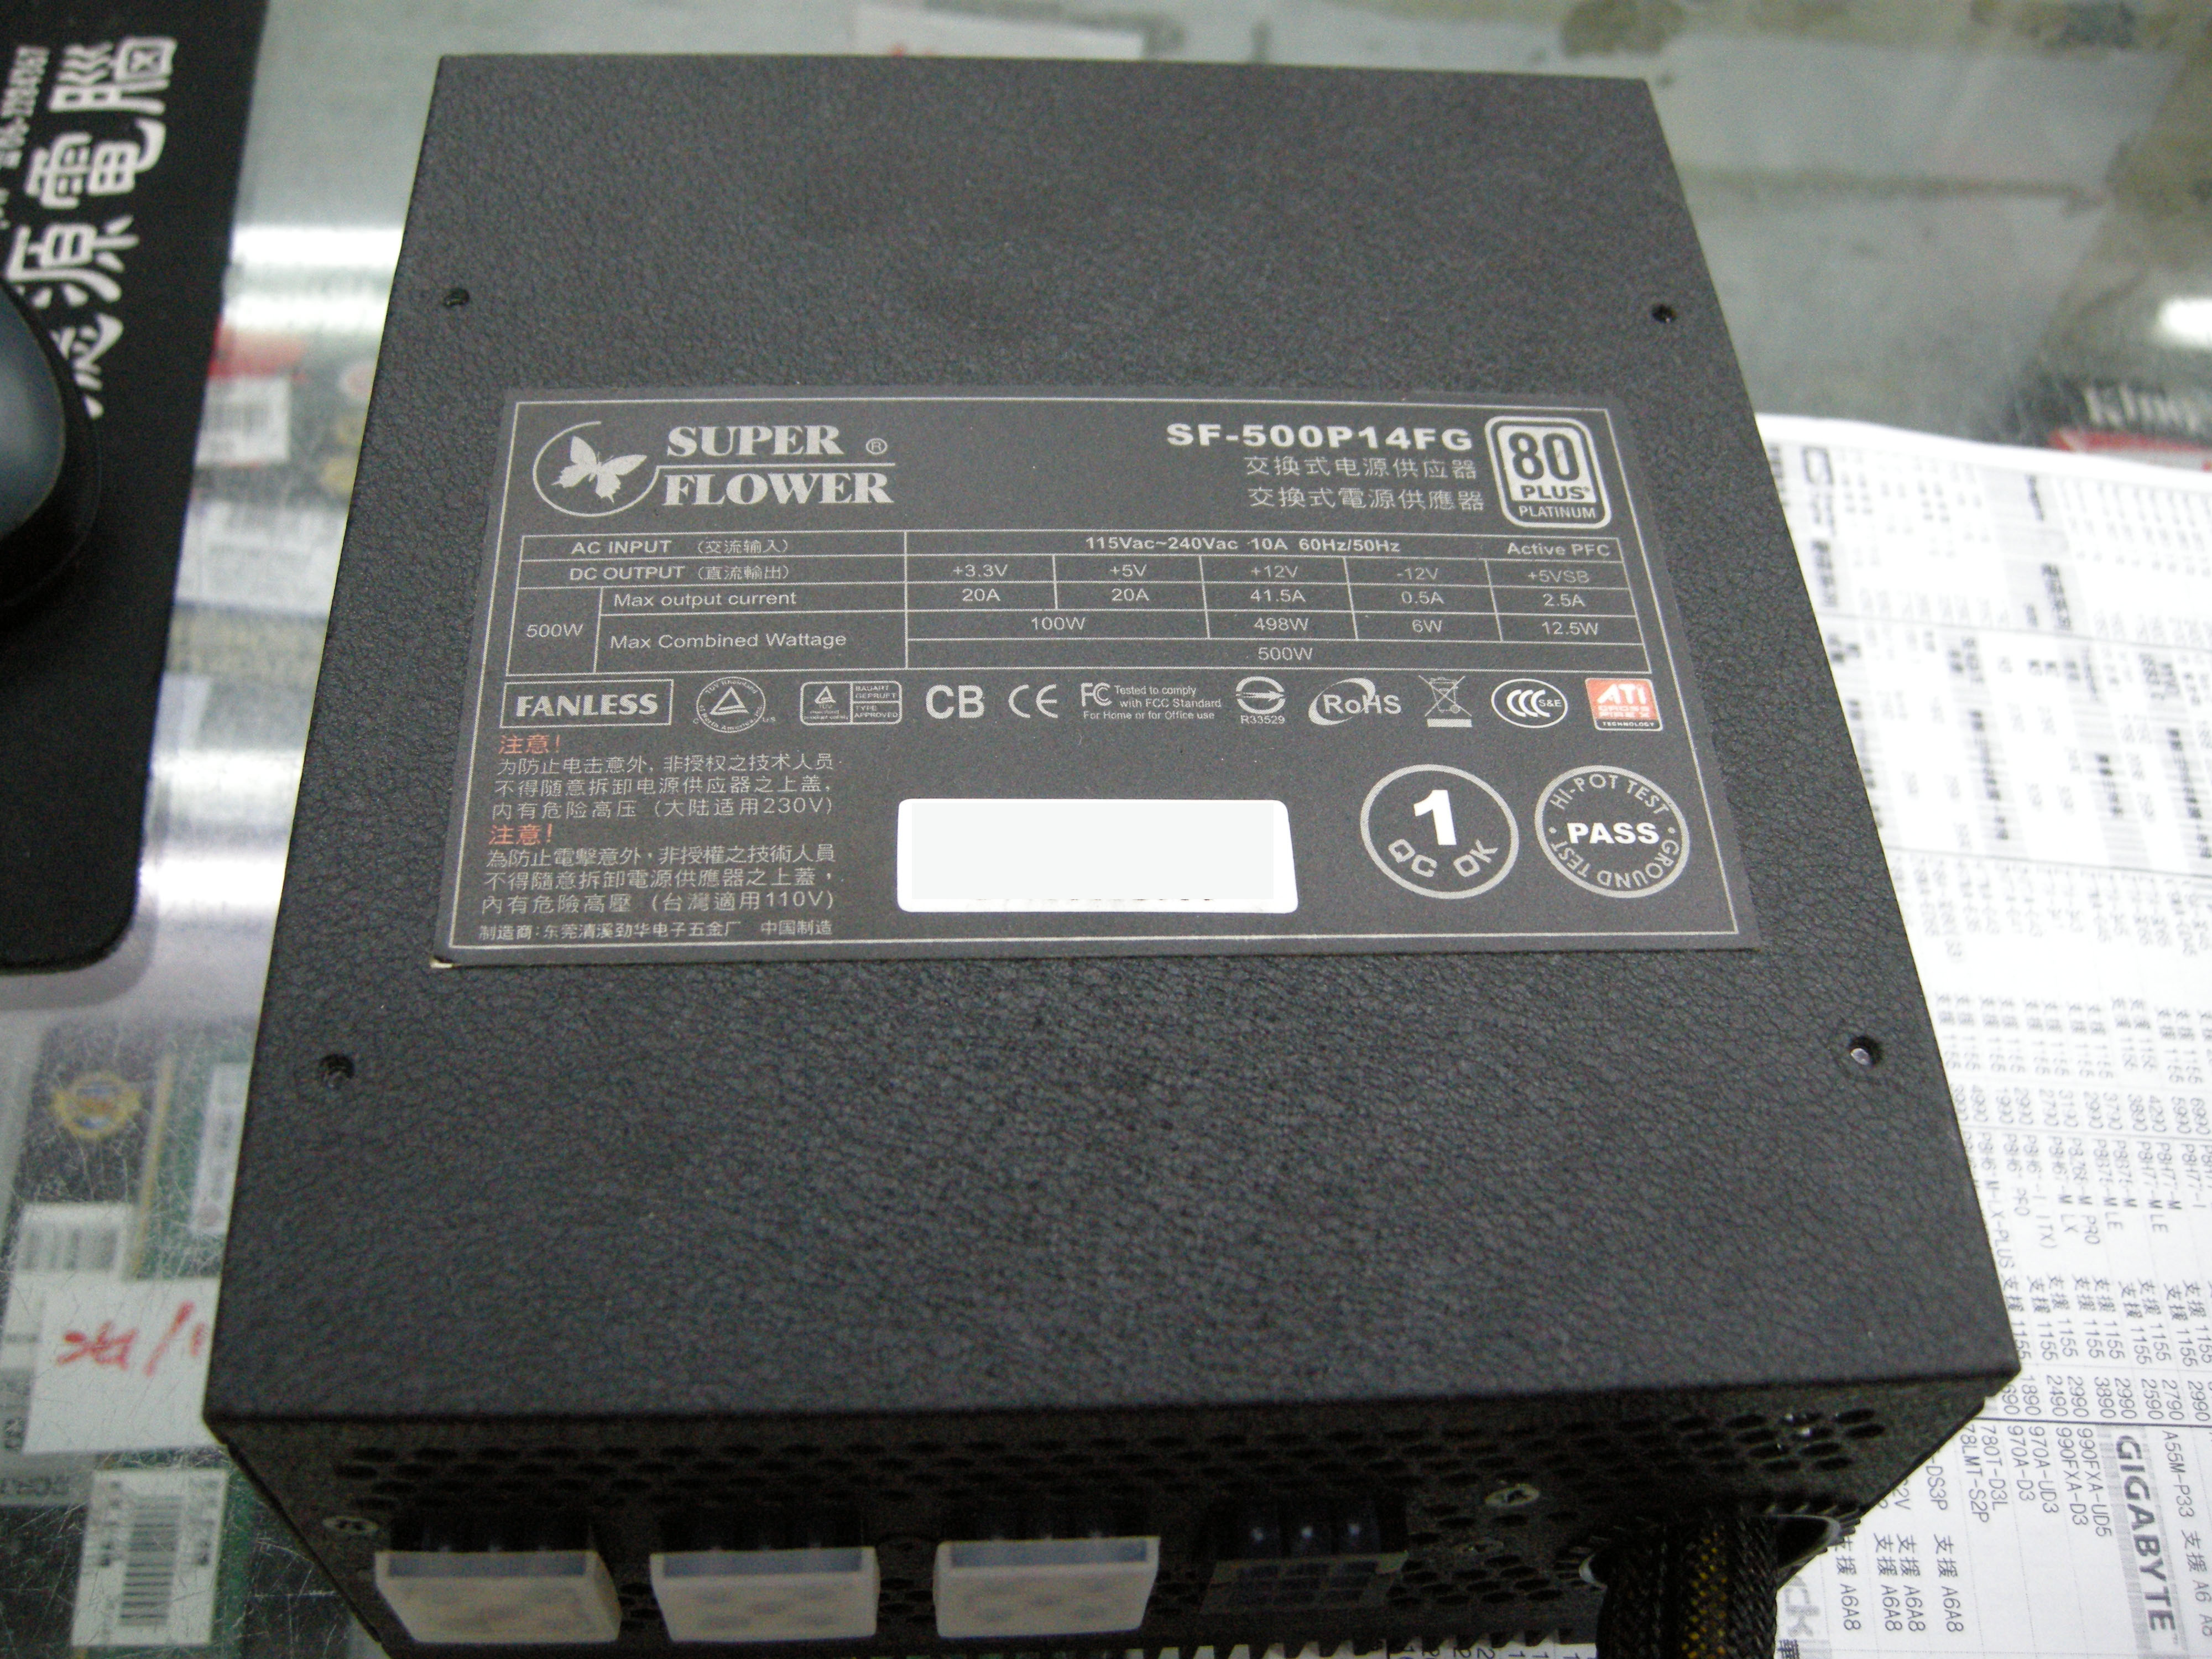 DSCN5221(3).JPG - 1.61 MB